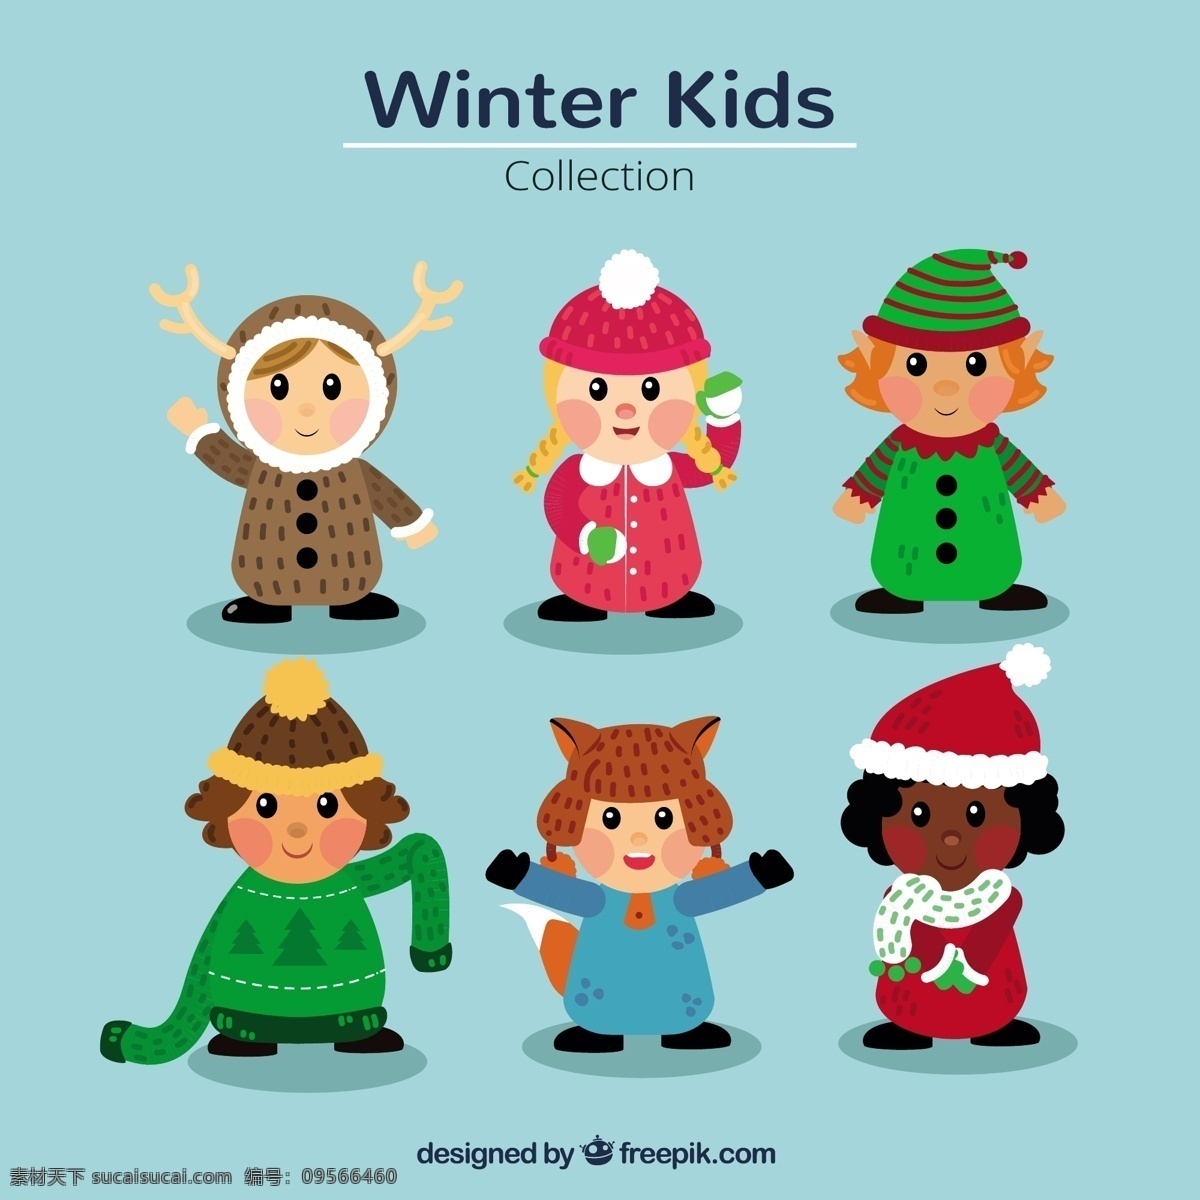 一群 漂亮 冬天 圣诞 衣服 孩子 圣诞节 下雪 性格 可爱 小孩 帽子 十二月 精灵 寒冷 人物 季节 冬装 背包 泽西